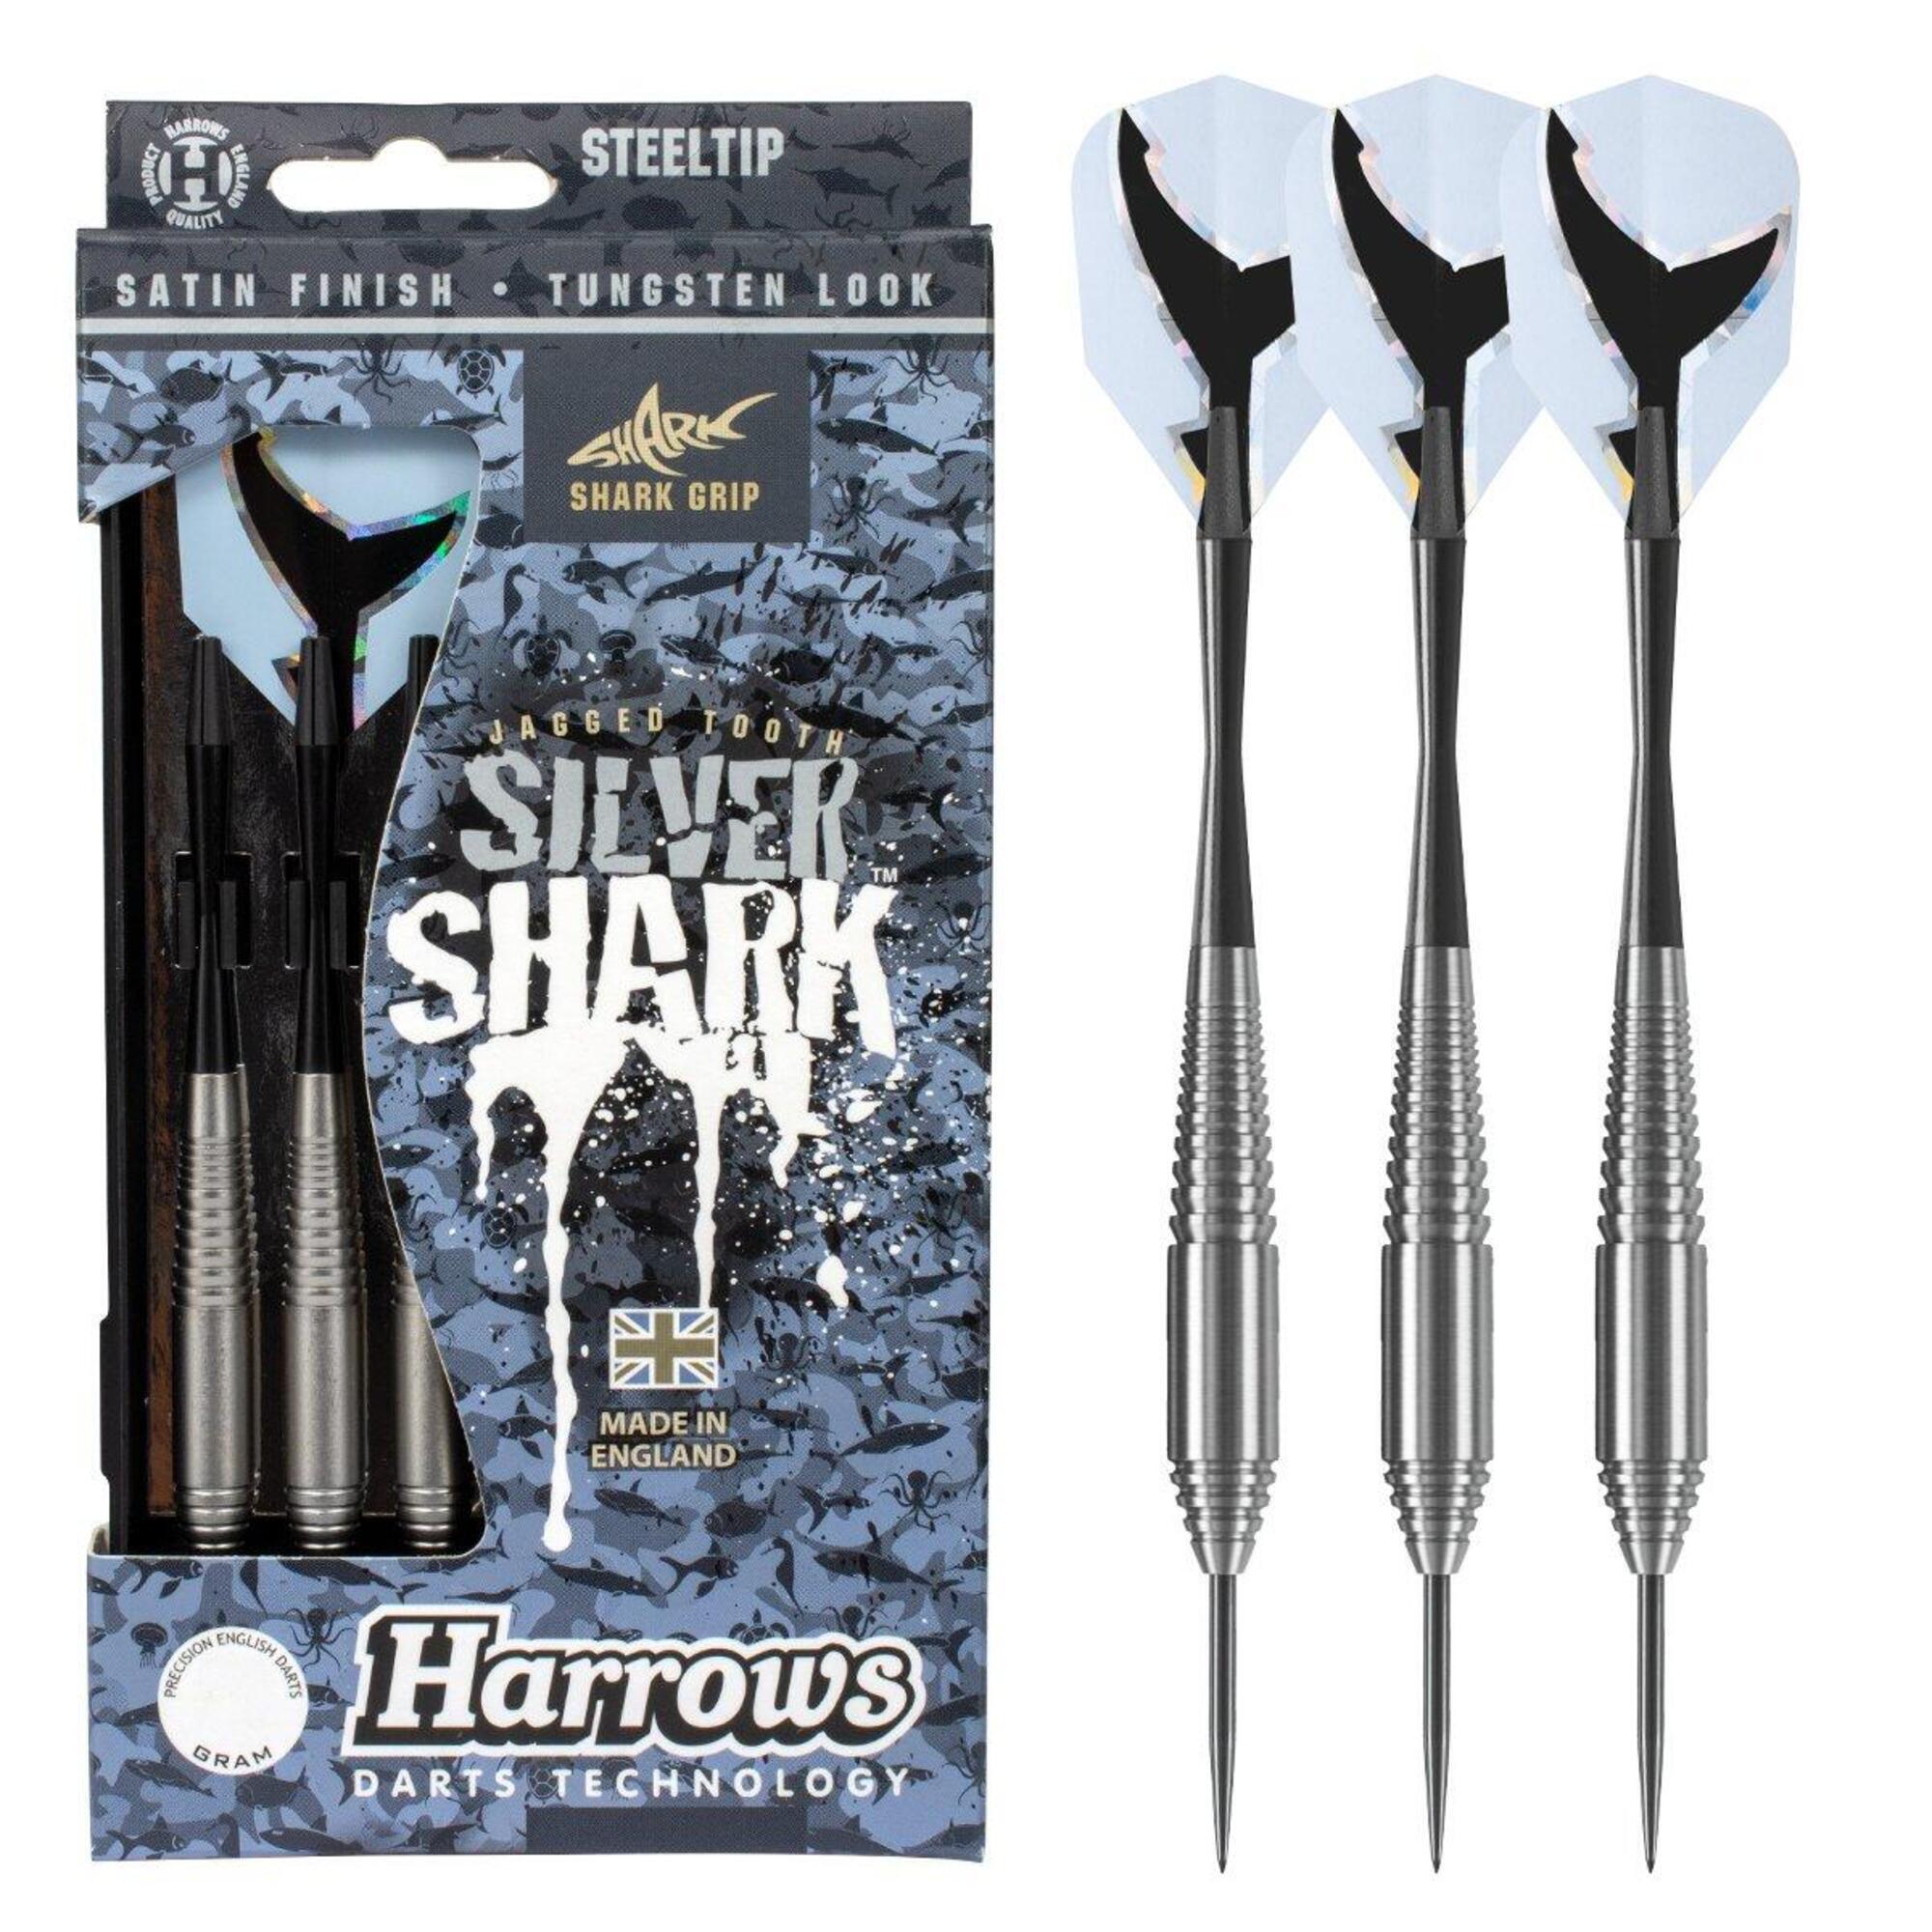 Eggen Silver Shark Darts 21 грамм HARROWS